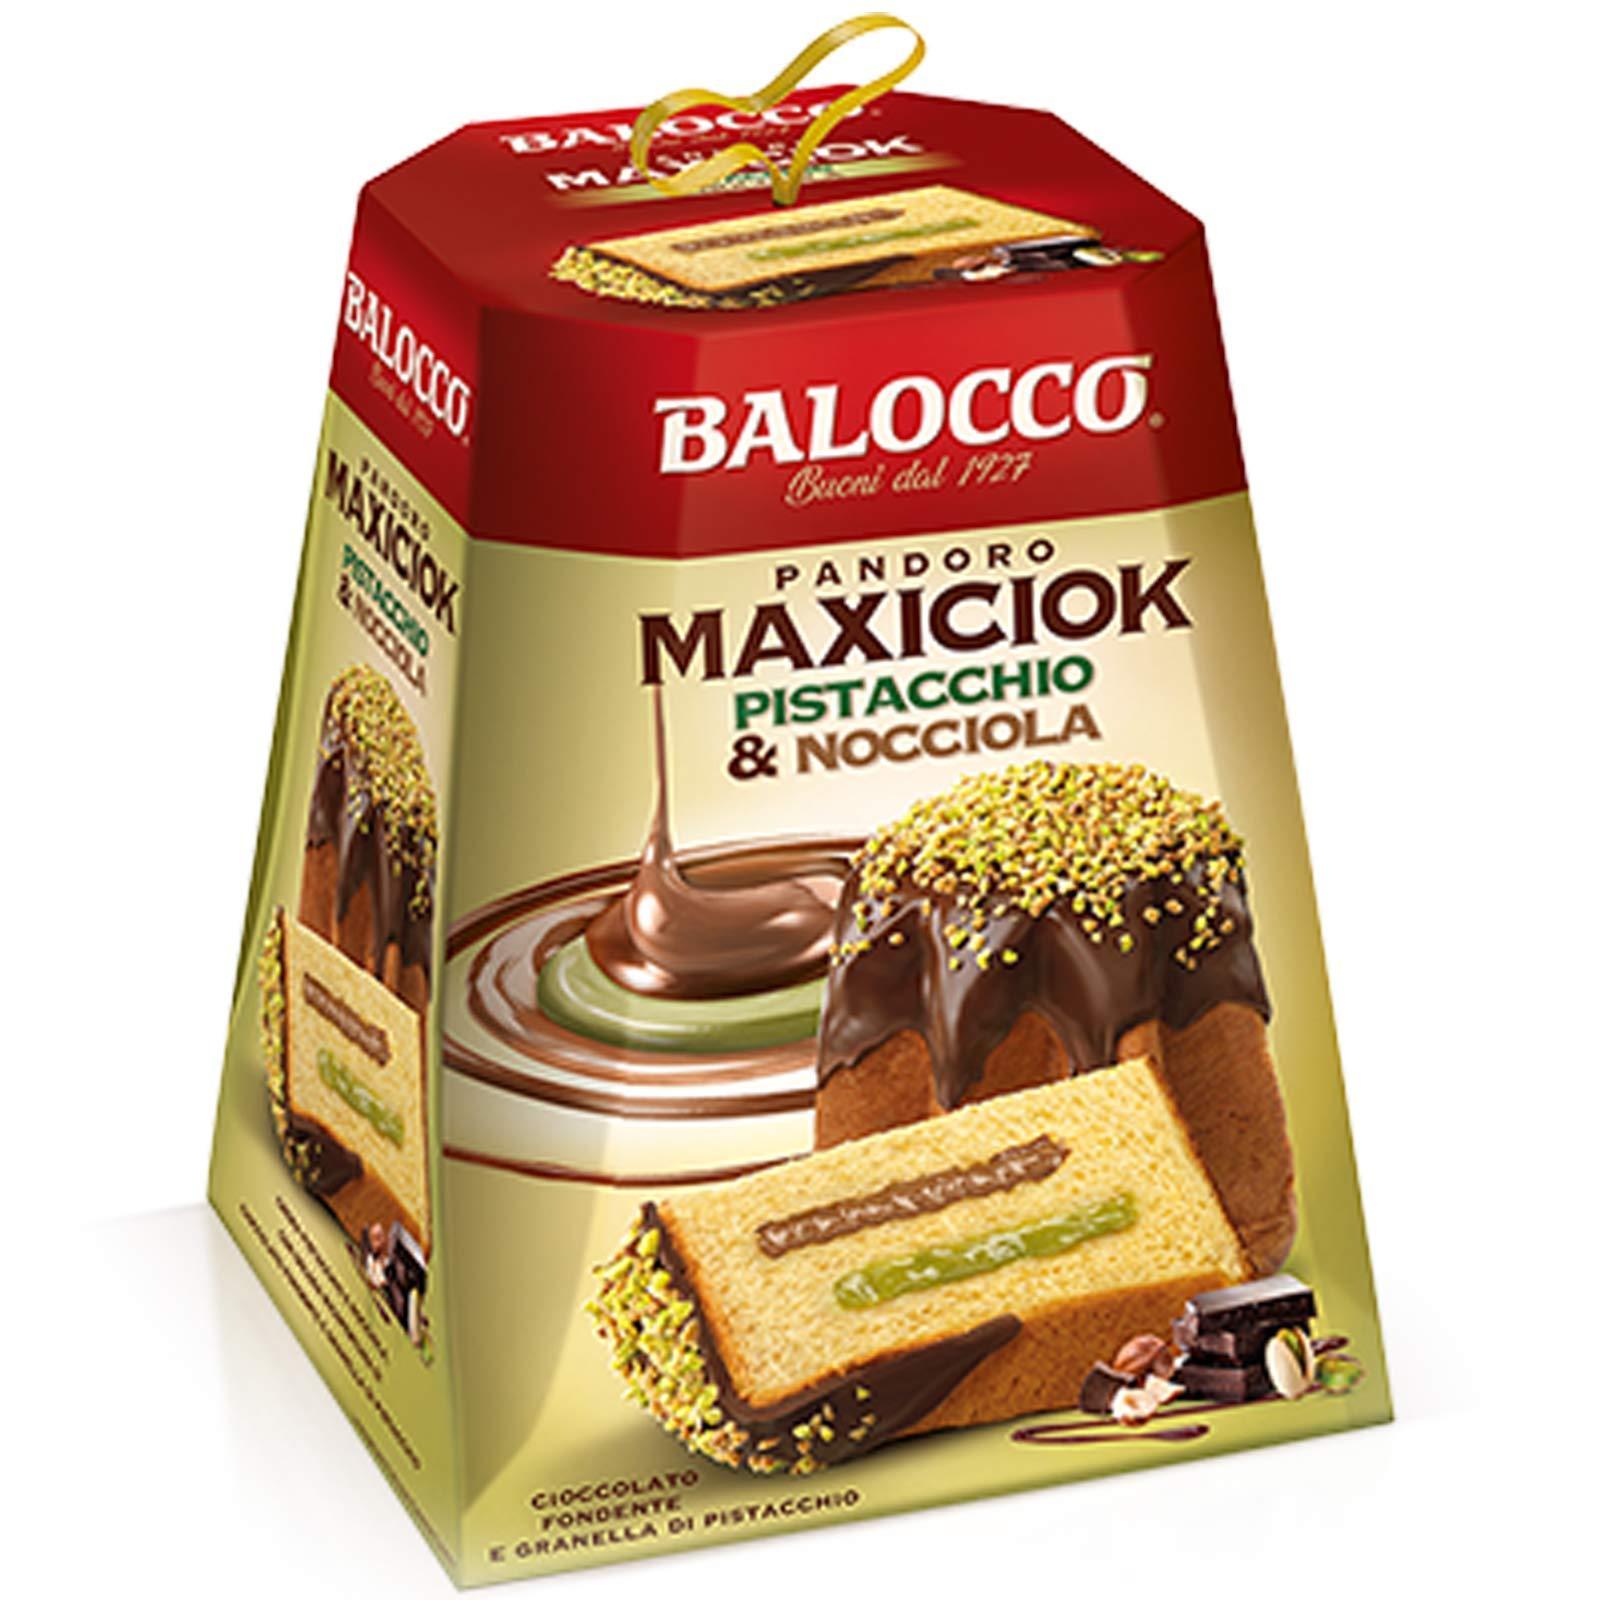 pandoro-maxiciok-pistacchio-e-nocciola-balocco-800gr